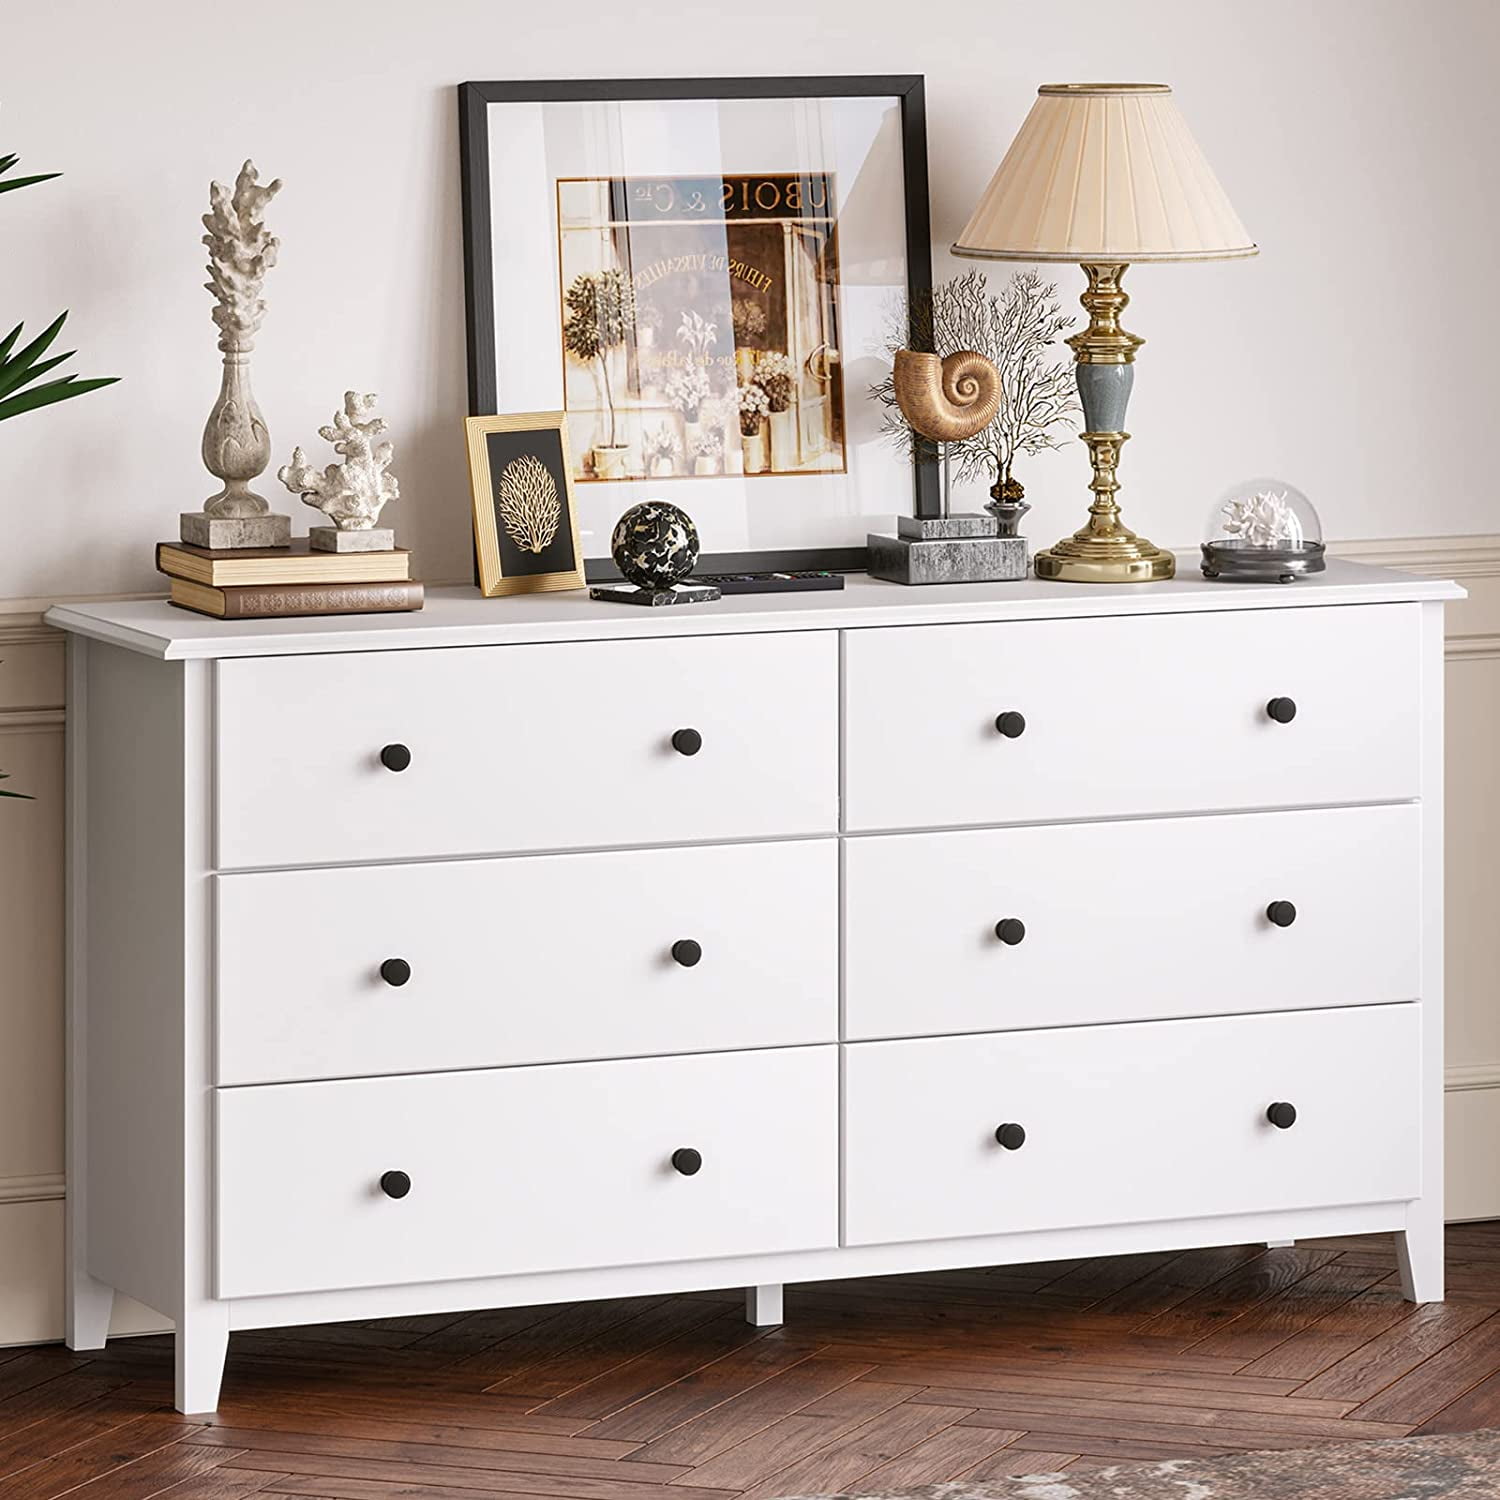 Wooden Dresser Chest Bedroom Drawer Storage Furniture Organizer 6 Drawers White 